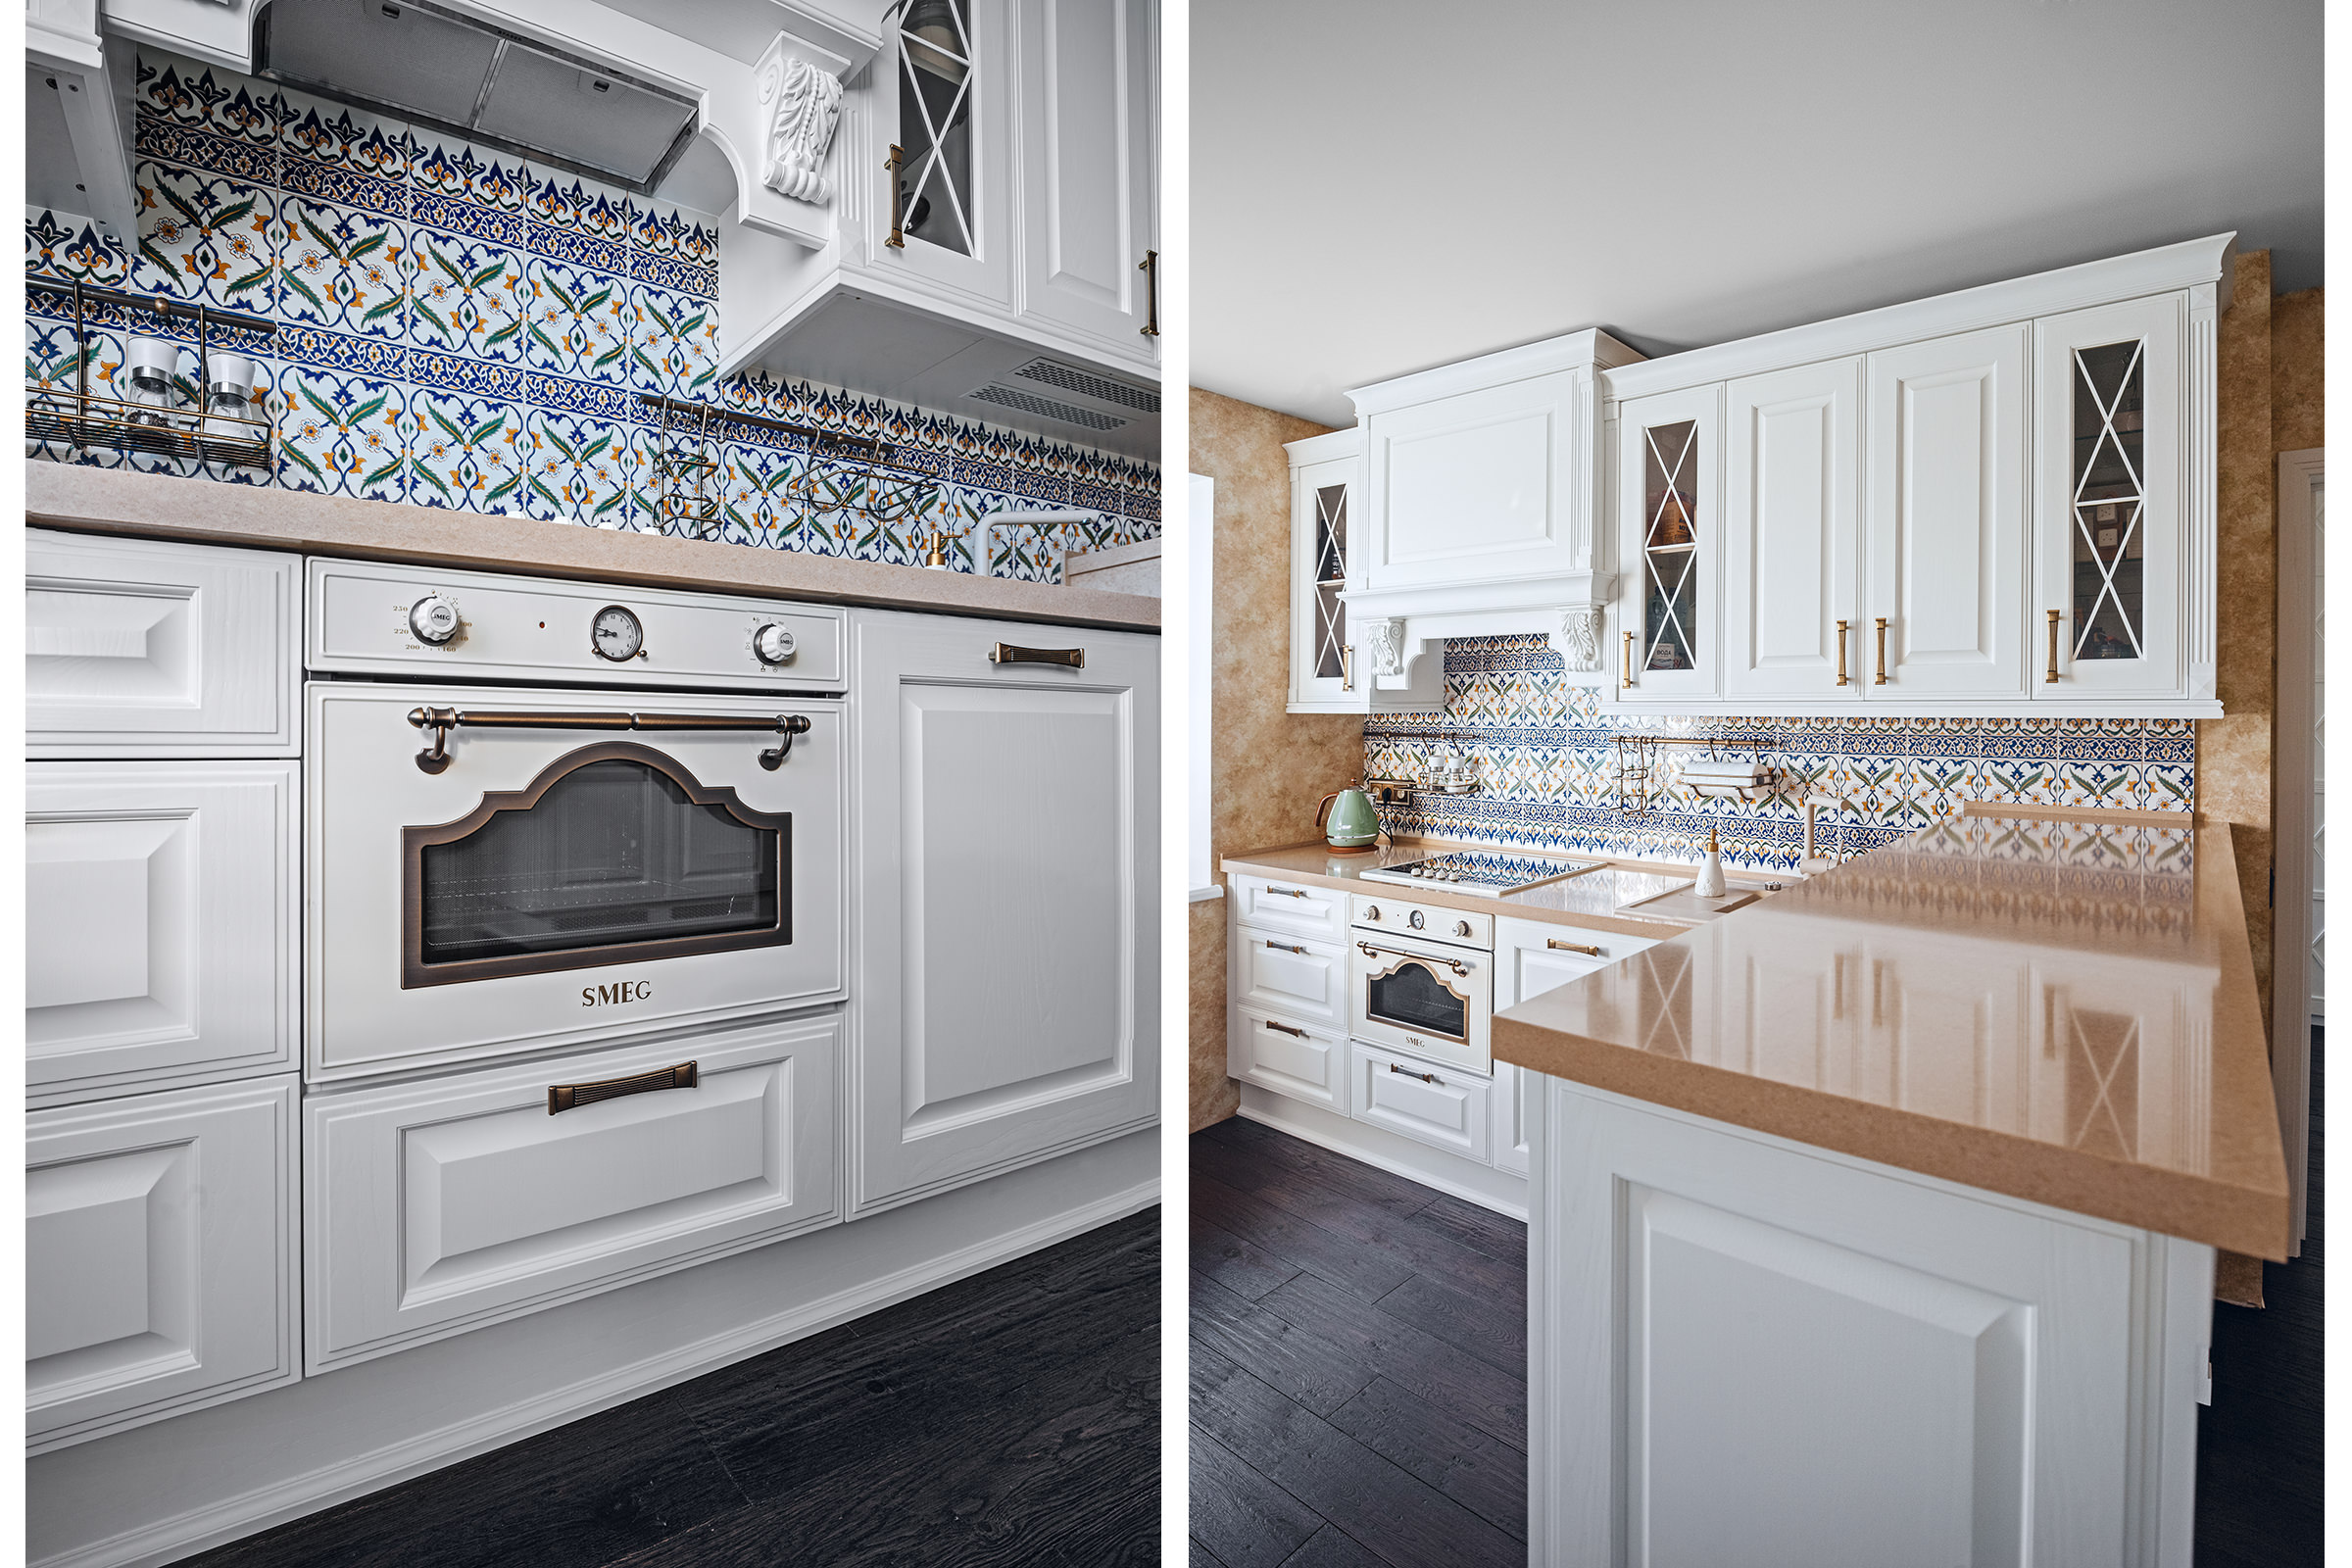 Фотосъёмка кухонной мебели белого цвета с бежевой столешницей и встроенной бытовой техники SMEG в квартире владельца для каталога производителя